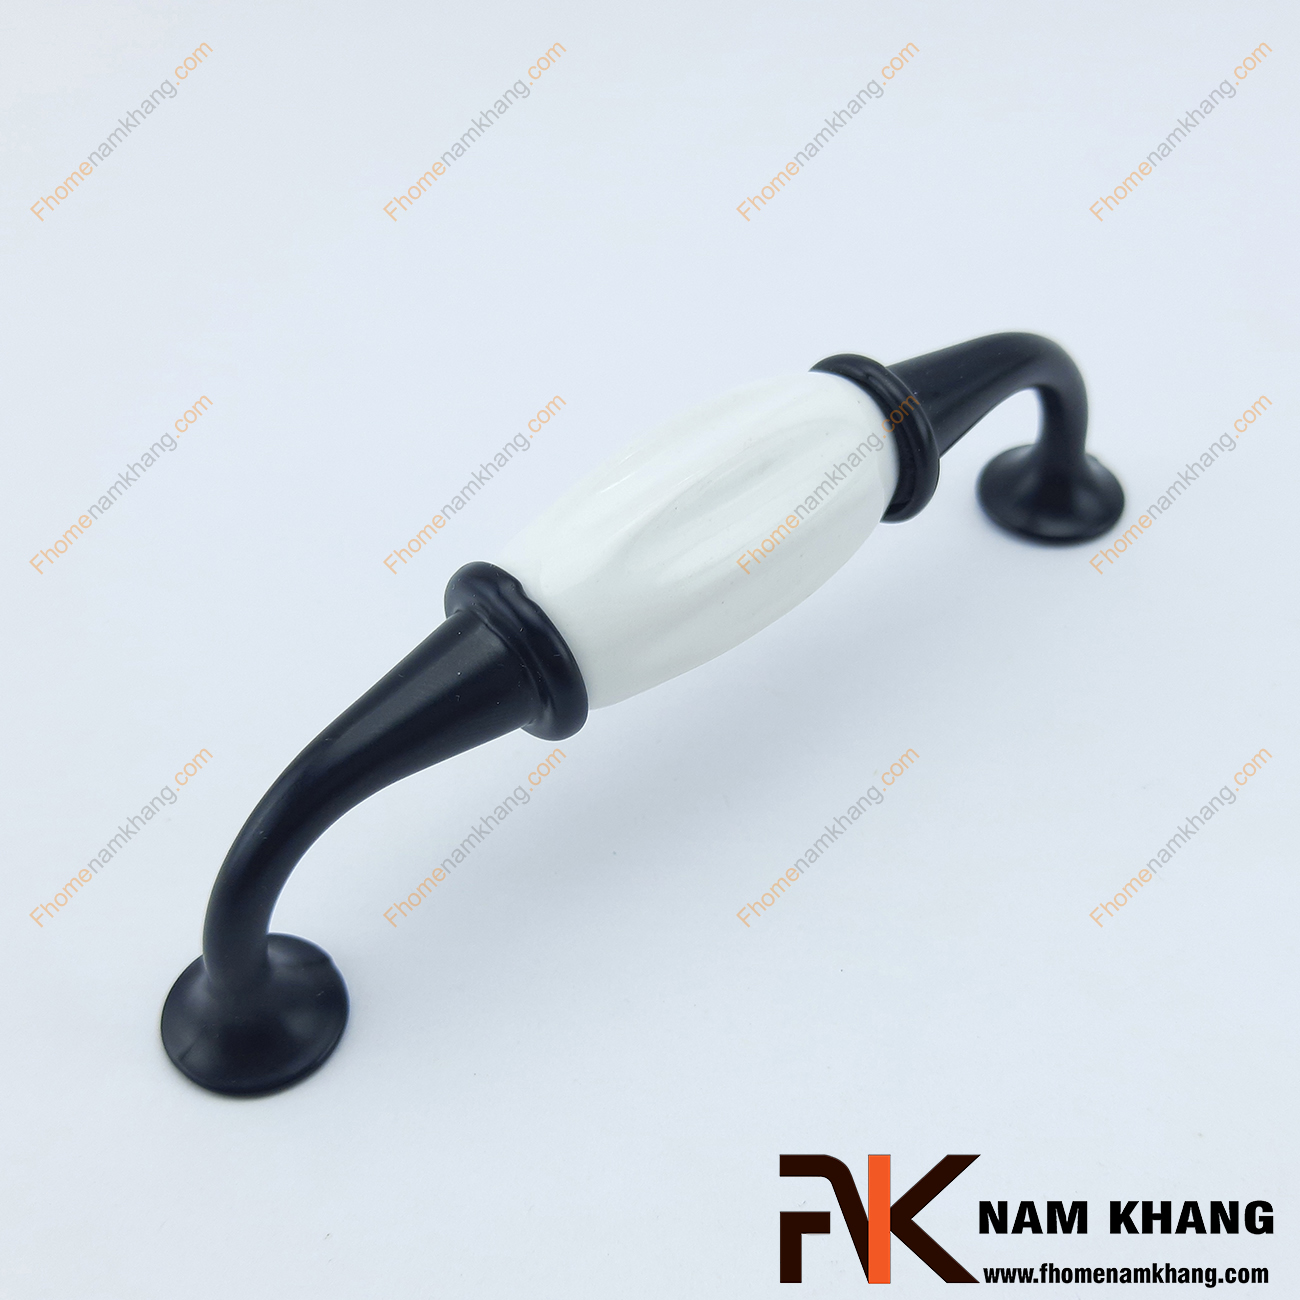 Tay nắm tủ phối sứ màu đen trắng NK322-96D là một dạng tay nắm có thiết kế rất  cổ, rất độc đáo. Được sản xuất trên chất liệu hợp kim cao cấp, kết hợp với loại sứ vân trắng ngà cao cấp rất lạ mắt nhưng có độ bền cao. 